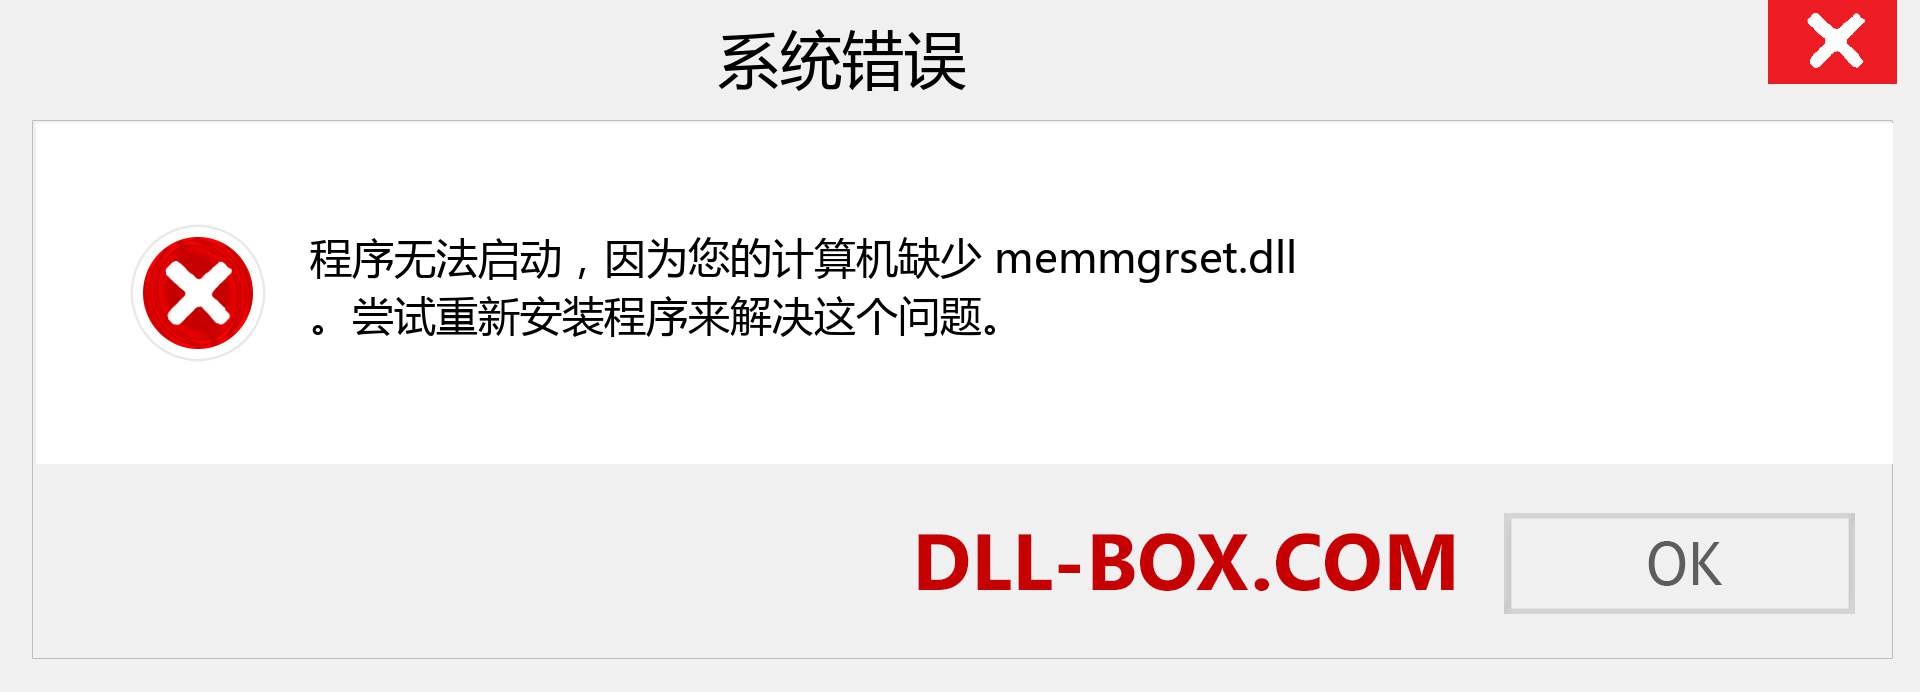 memmgrset.dll 文件丢失？。 适用于 Windows 7、8、10 的下载 - 修复 Windows、照片、图像上的 memmgrset dll 丢失错误